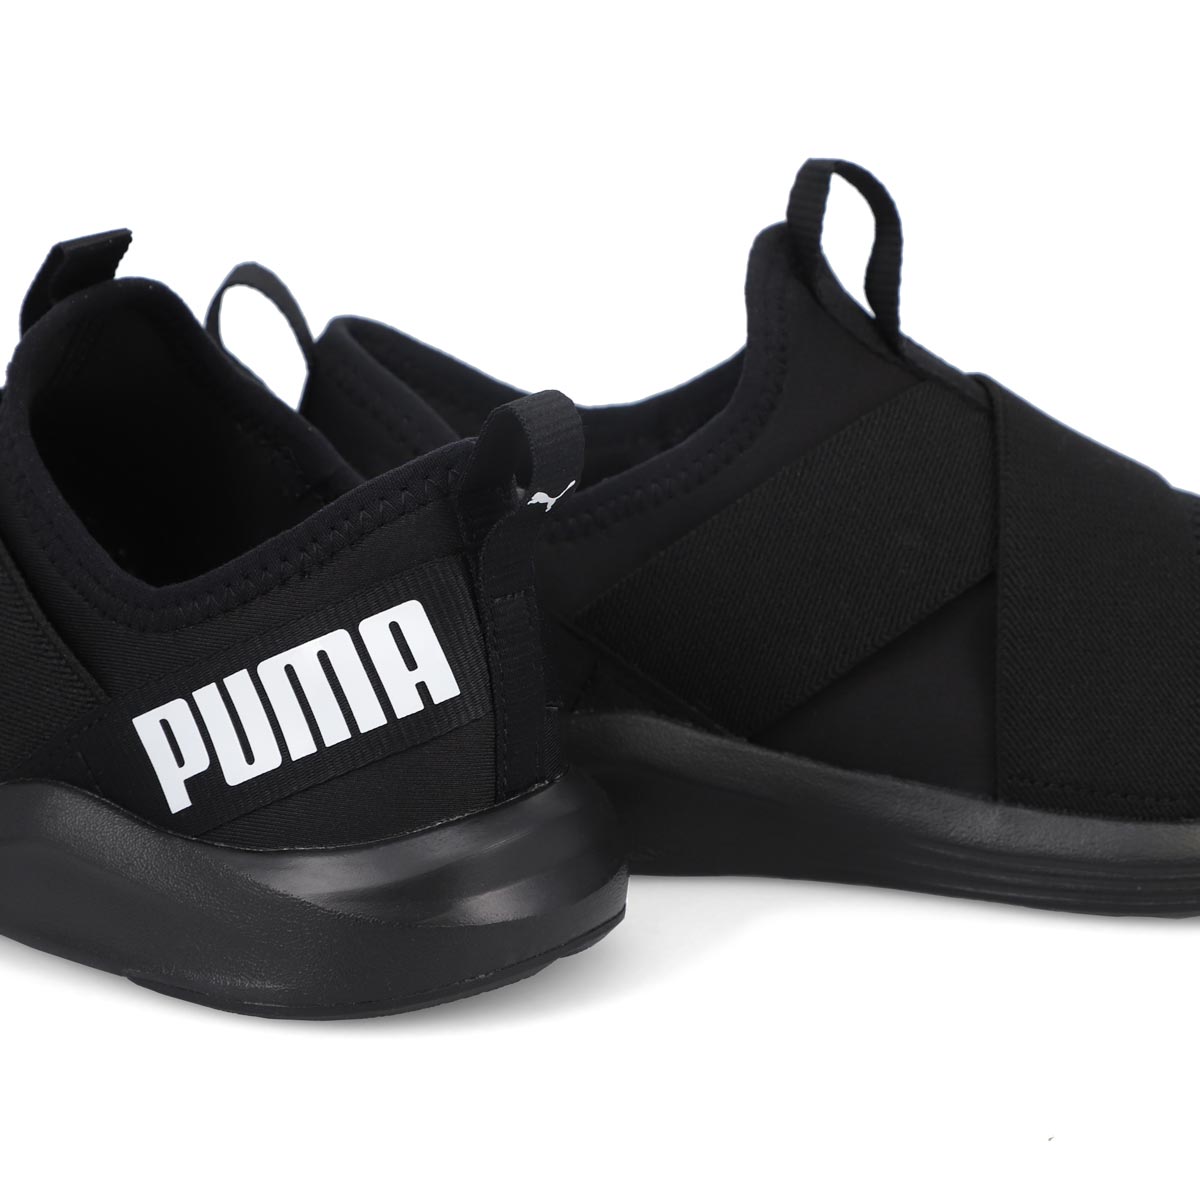 Women's Prowl Slip On Sneaker - Black/Black